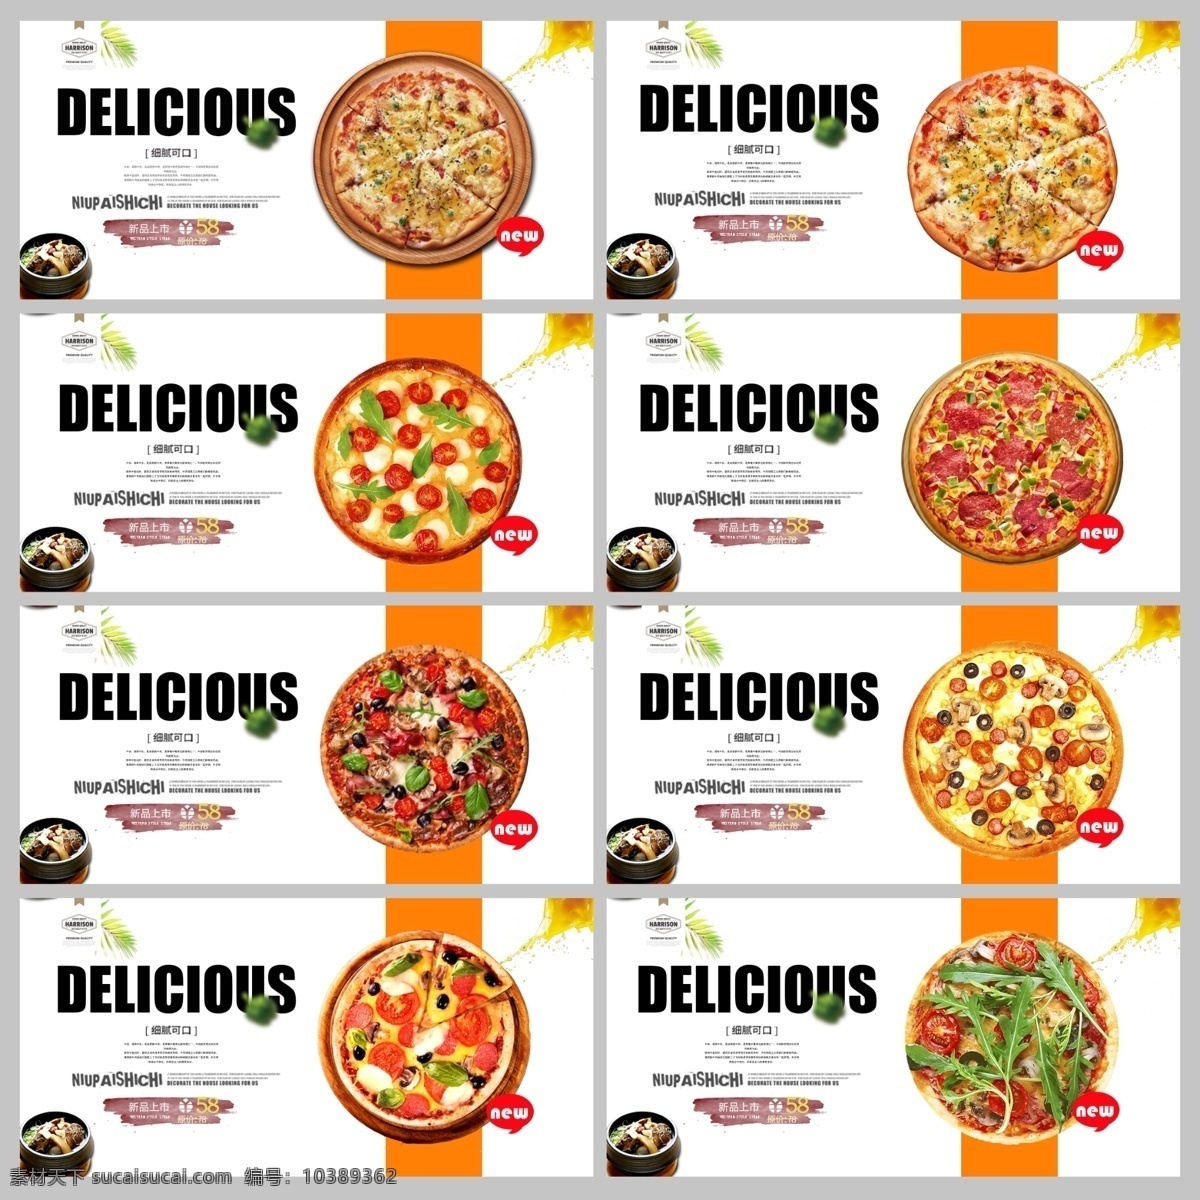 意大利披萨 pizza 披萨 美味 中国披萨 披萨做法 美味披萨 小吃 披萨海报 披萨展板 披萨文化 披萨促销 披萨西餐 披萨快餐 披萨加盟 披萨店 披萨必胜店 比萨披萨 披萨包装 披萨美食 西式披萨 披萨厨师 披萨插画 披萨广告 披萨画册 披萨折页 披萨挂画 披萨外卖